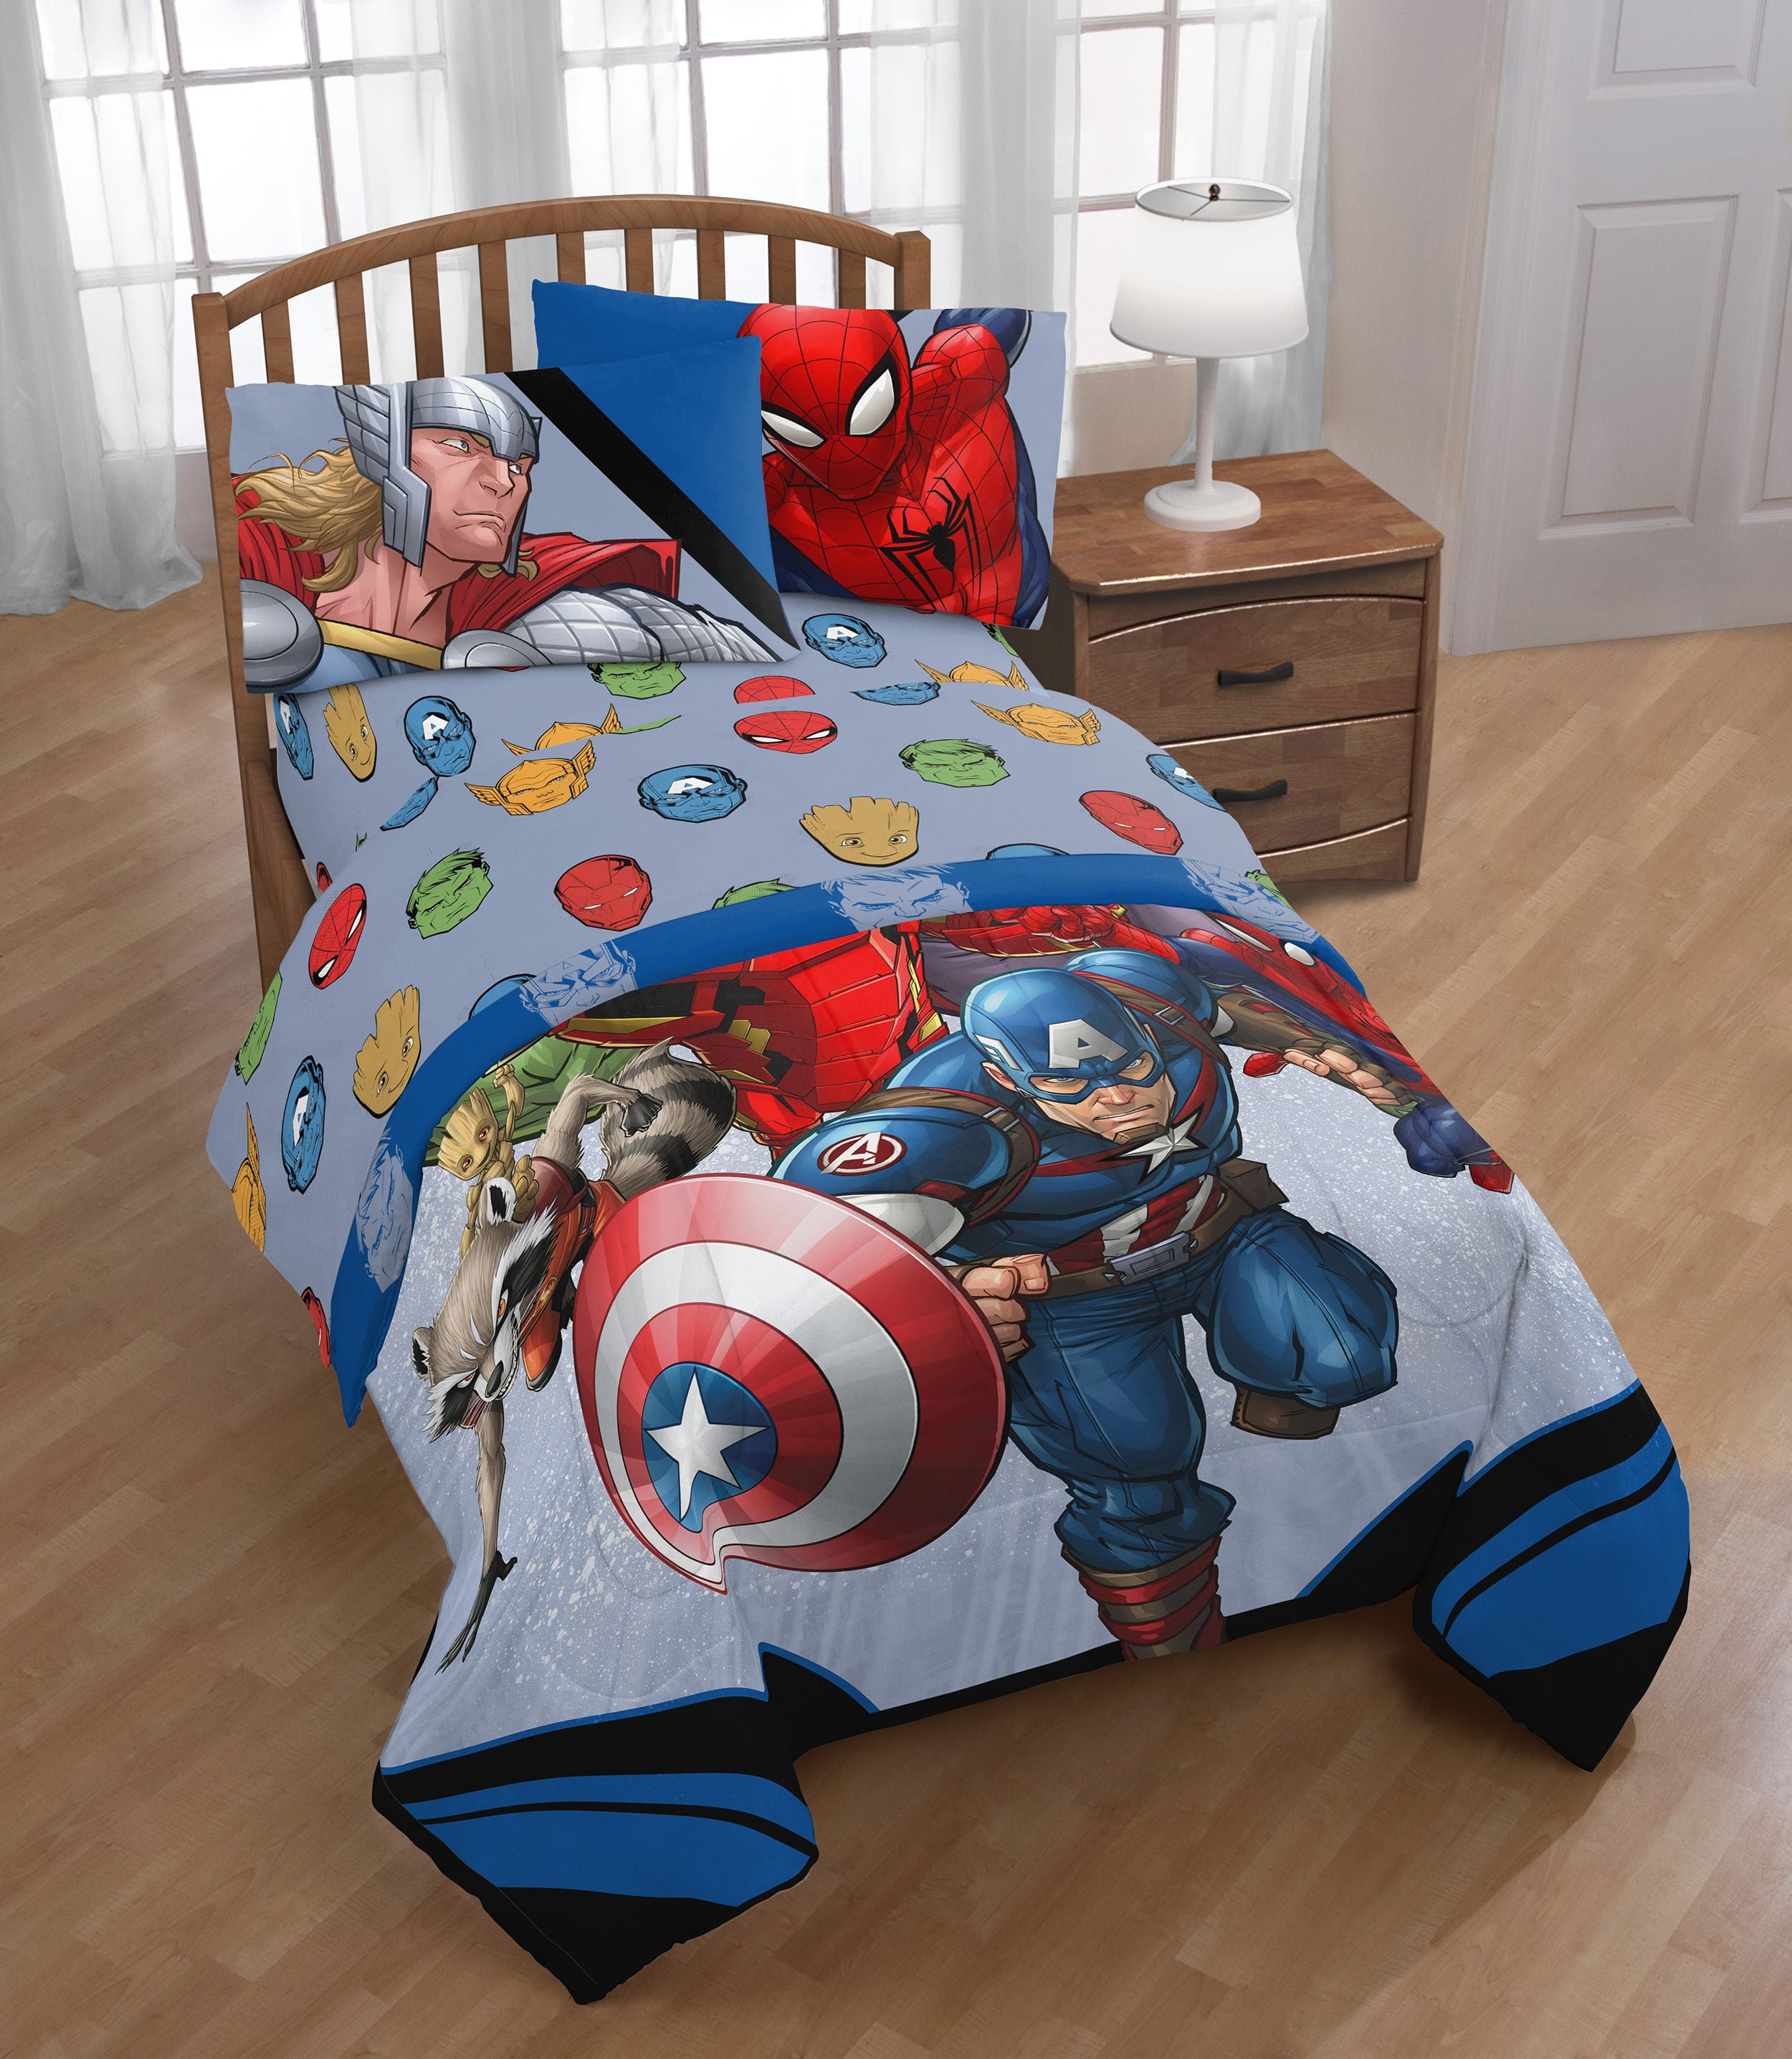 MARVEL AVENGERS Superhero TWIN/FULL Bed COMFORTER Thor Hulk Bedding Blanket 